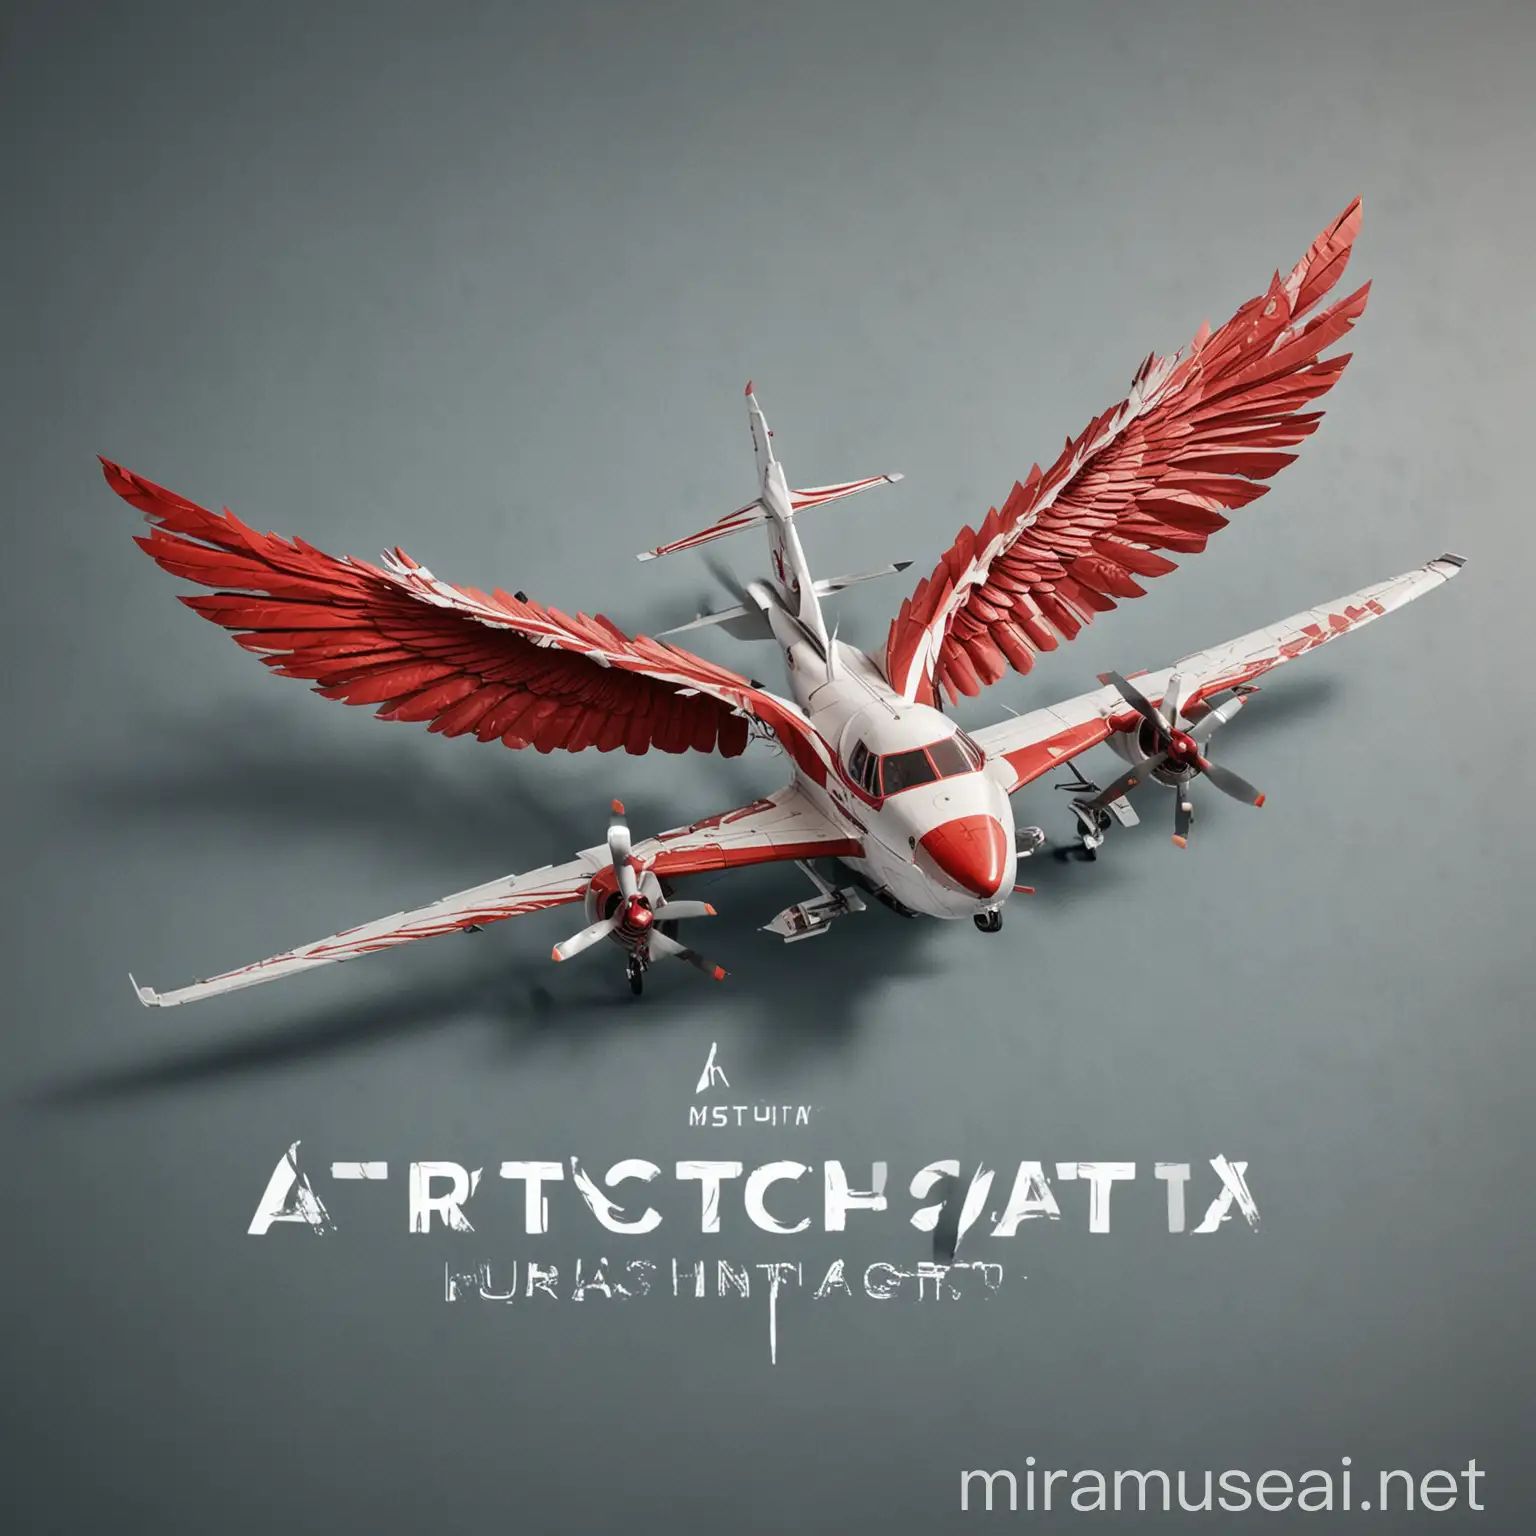 логотип с текстом arщatta и крылом самолета